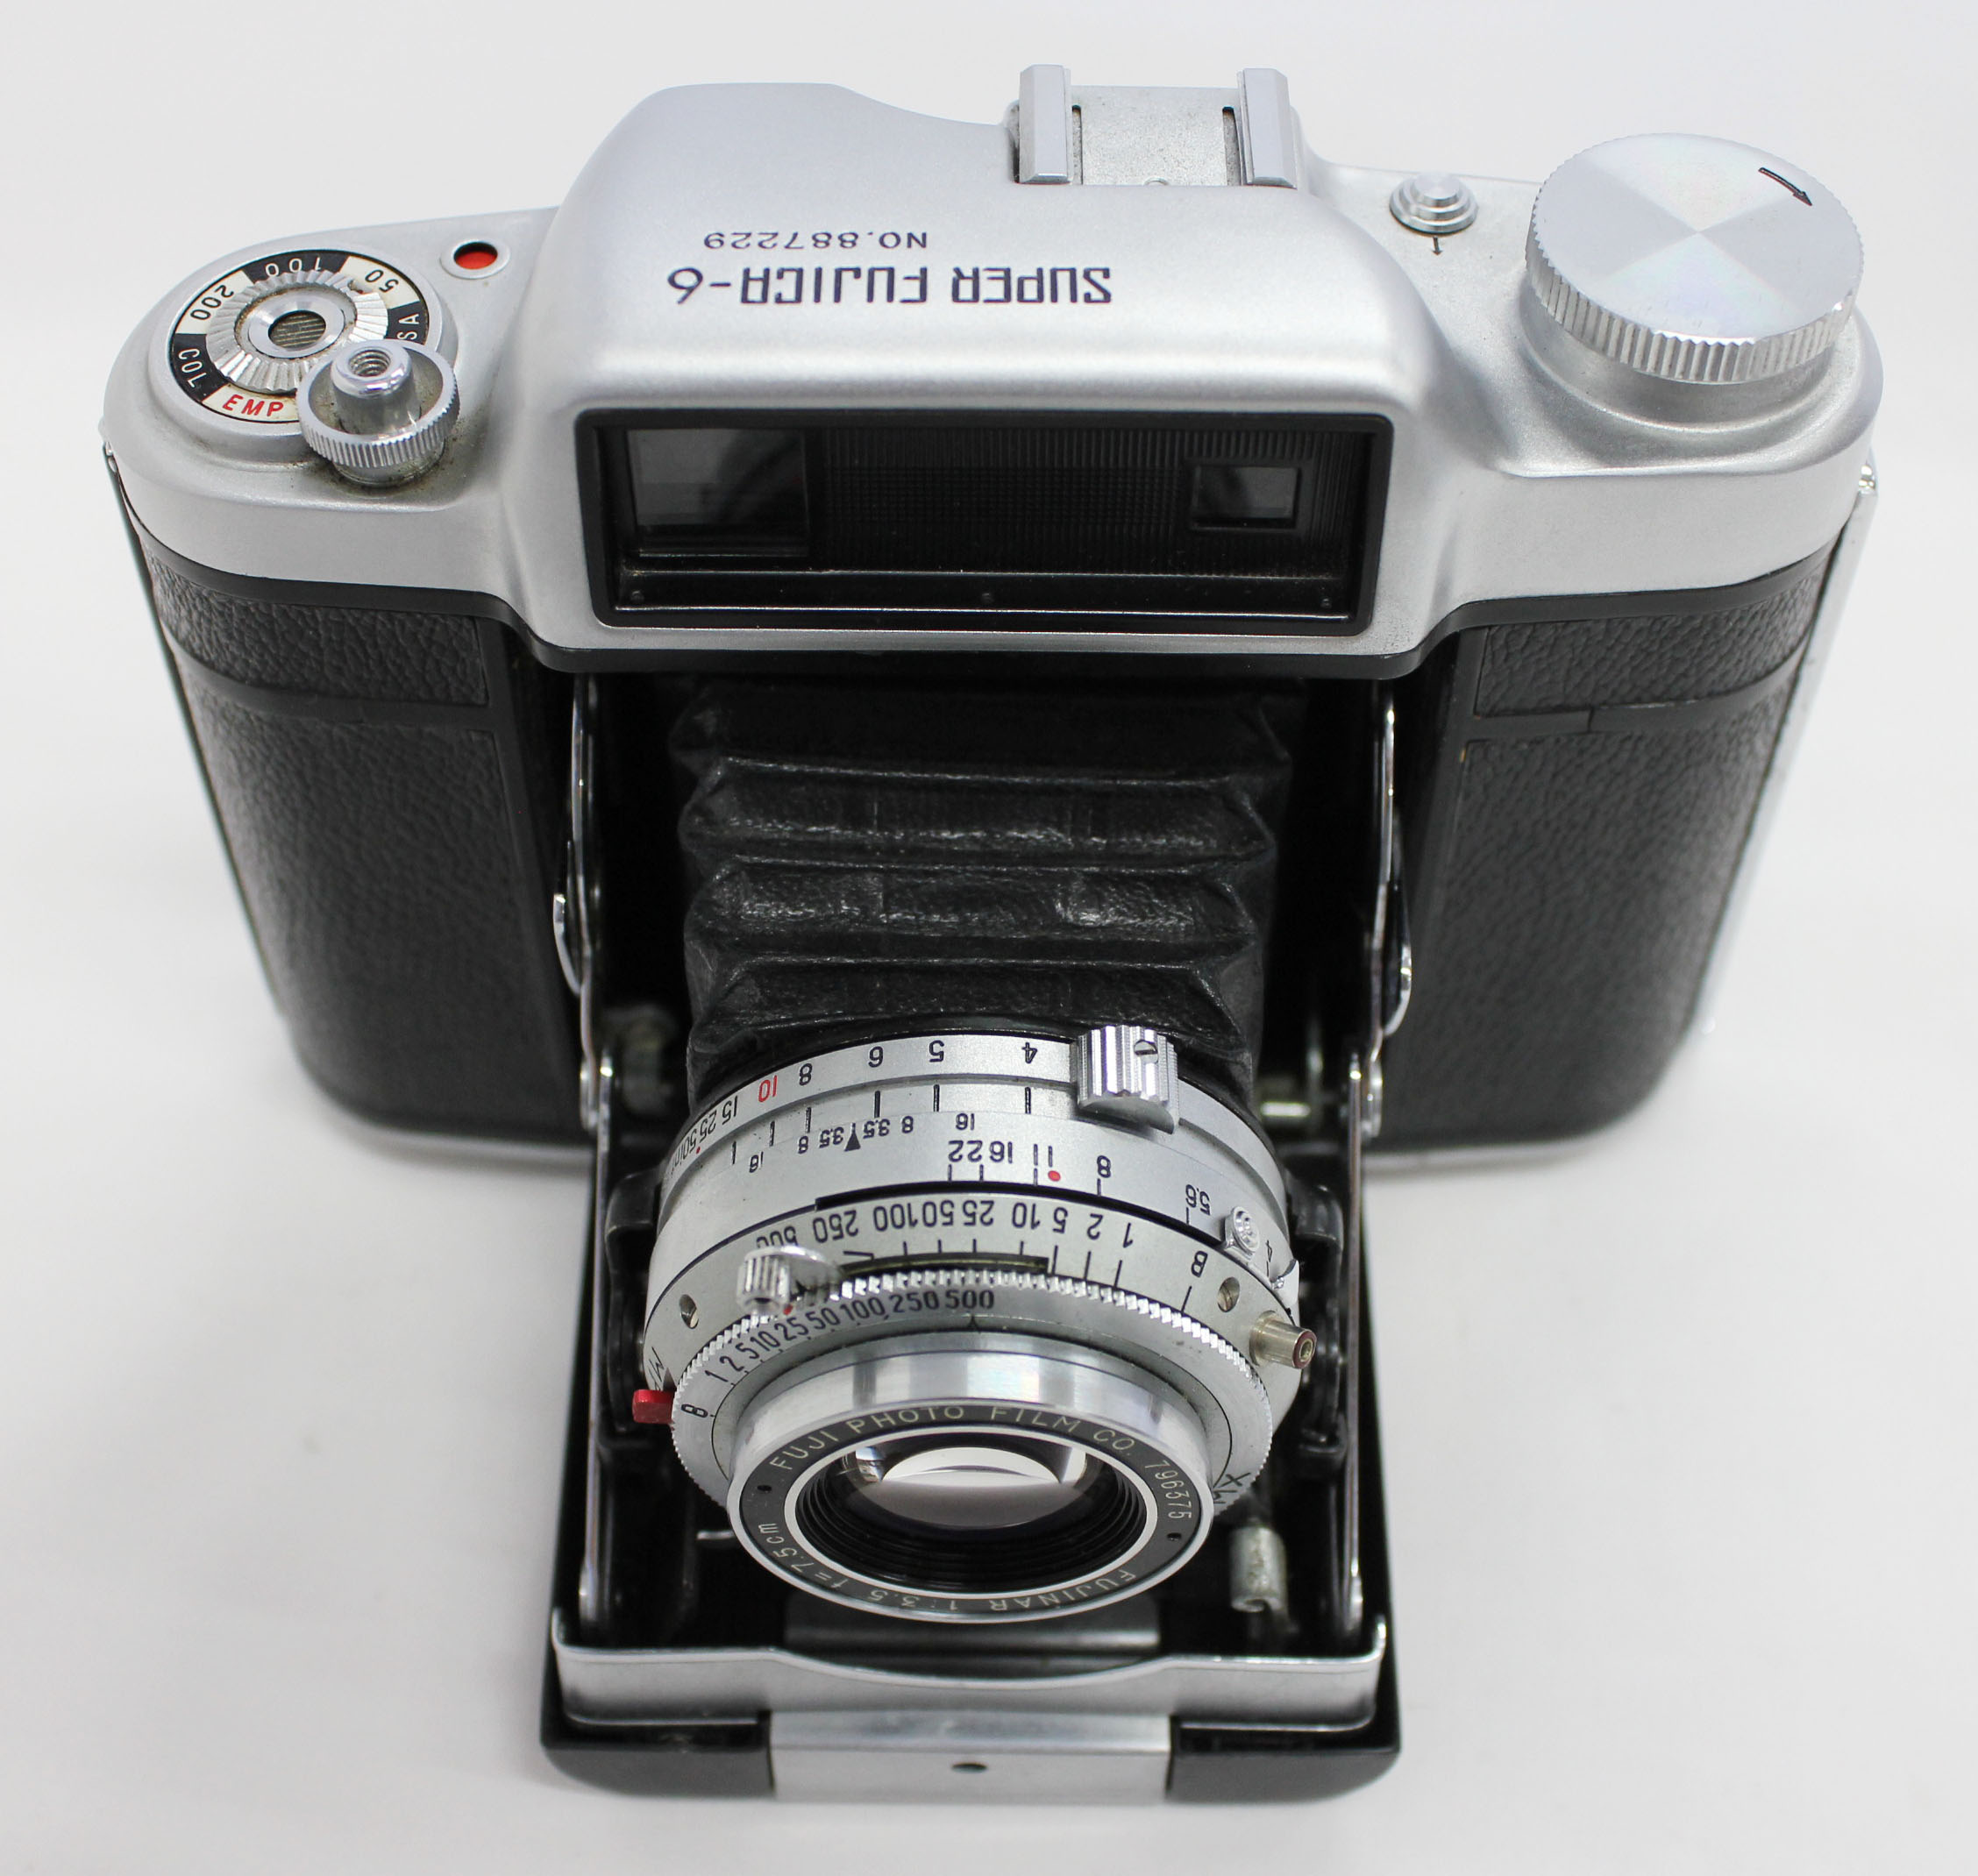  Fuji Super Fujica-6 Six 6x6 Medium Format Film Camera with Fujinar 75mm F/3.5 from Japan Photo 4